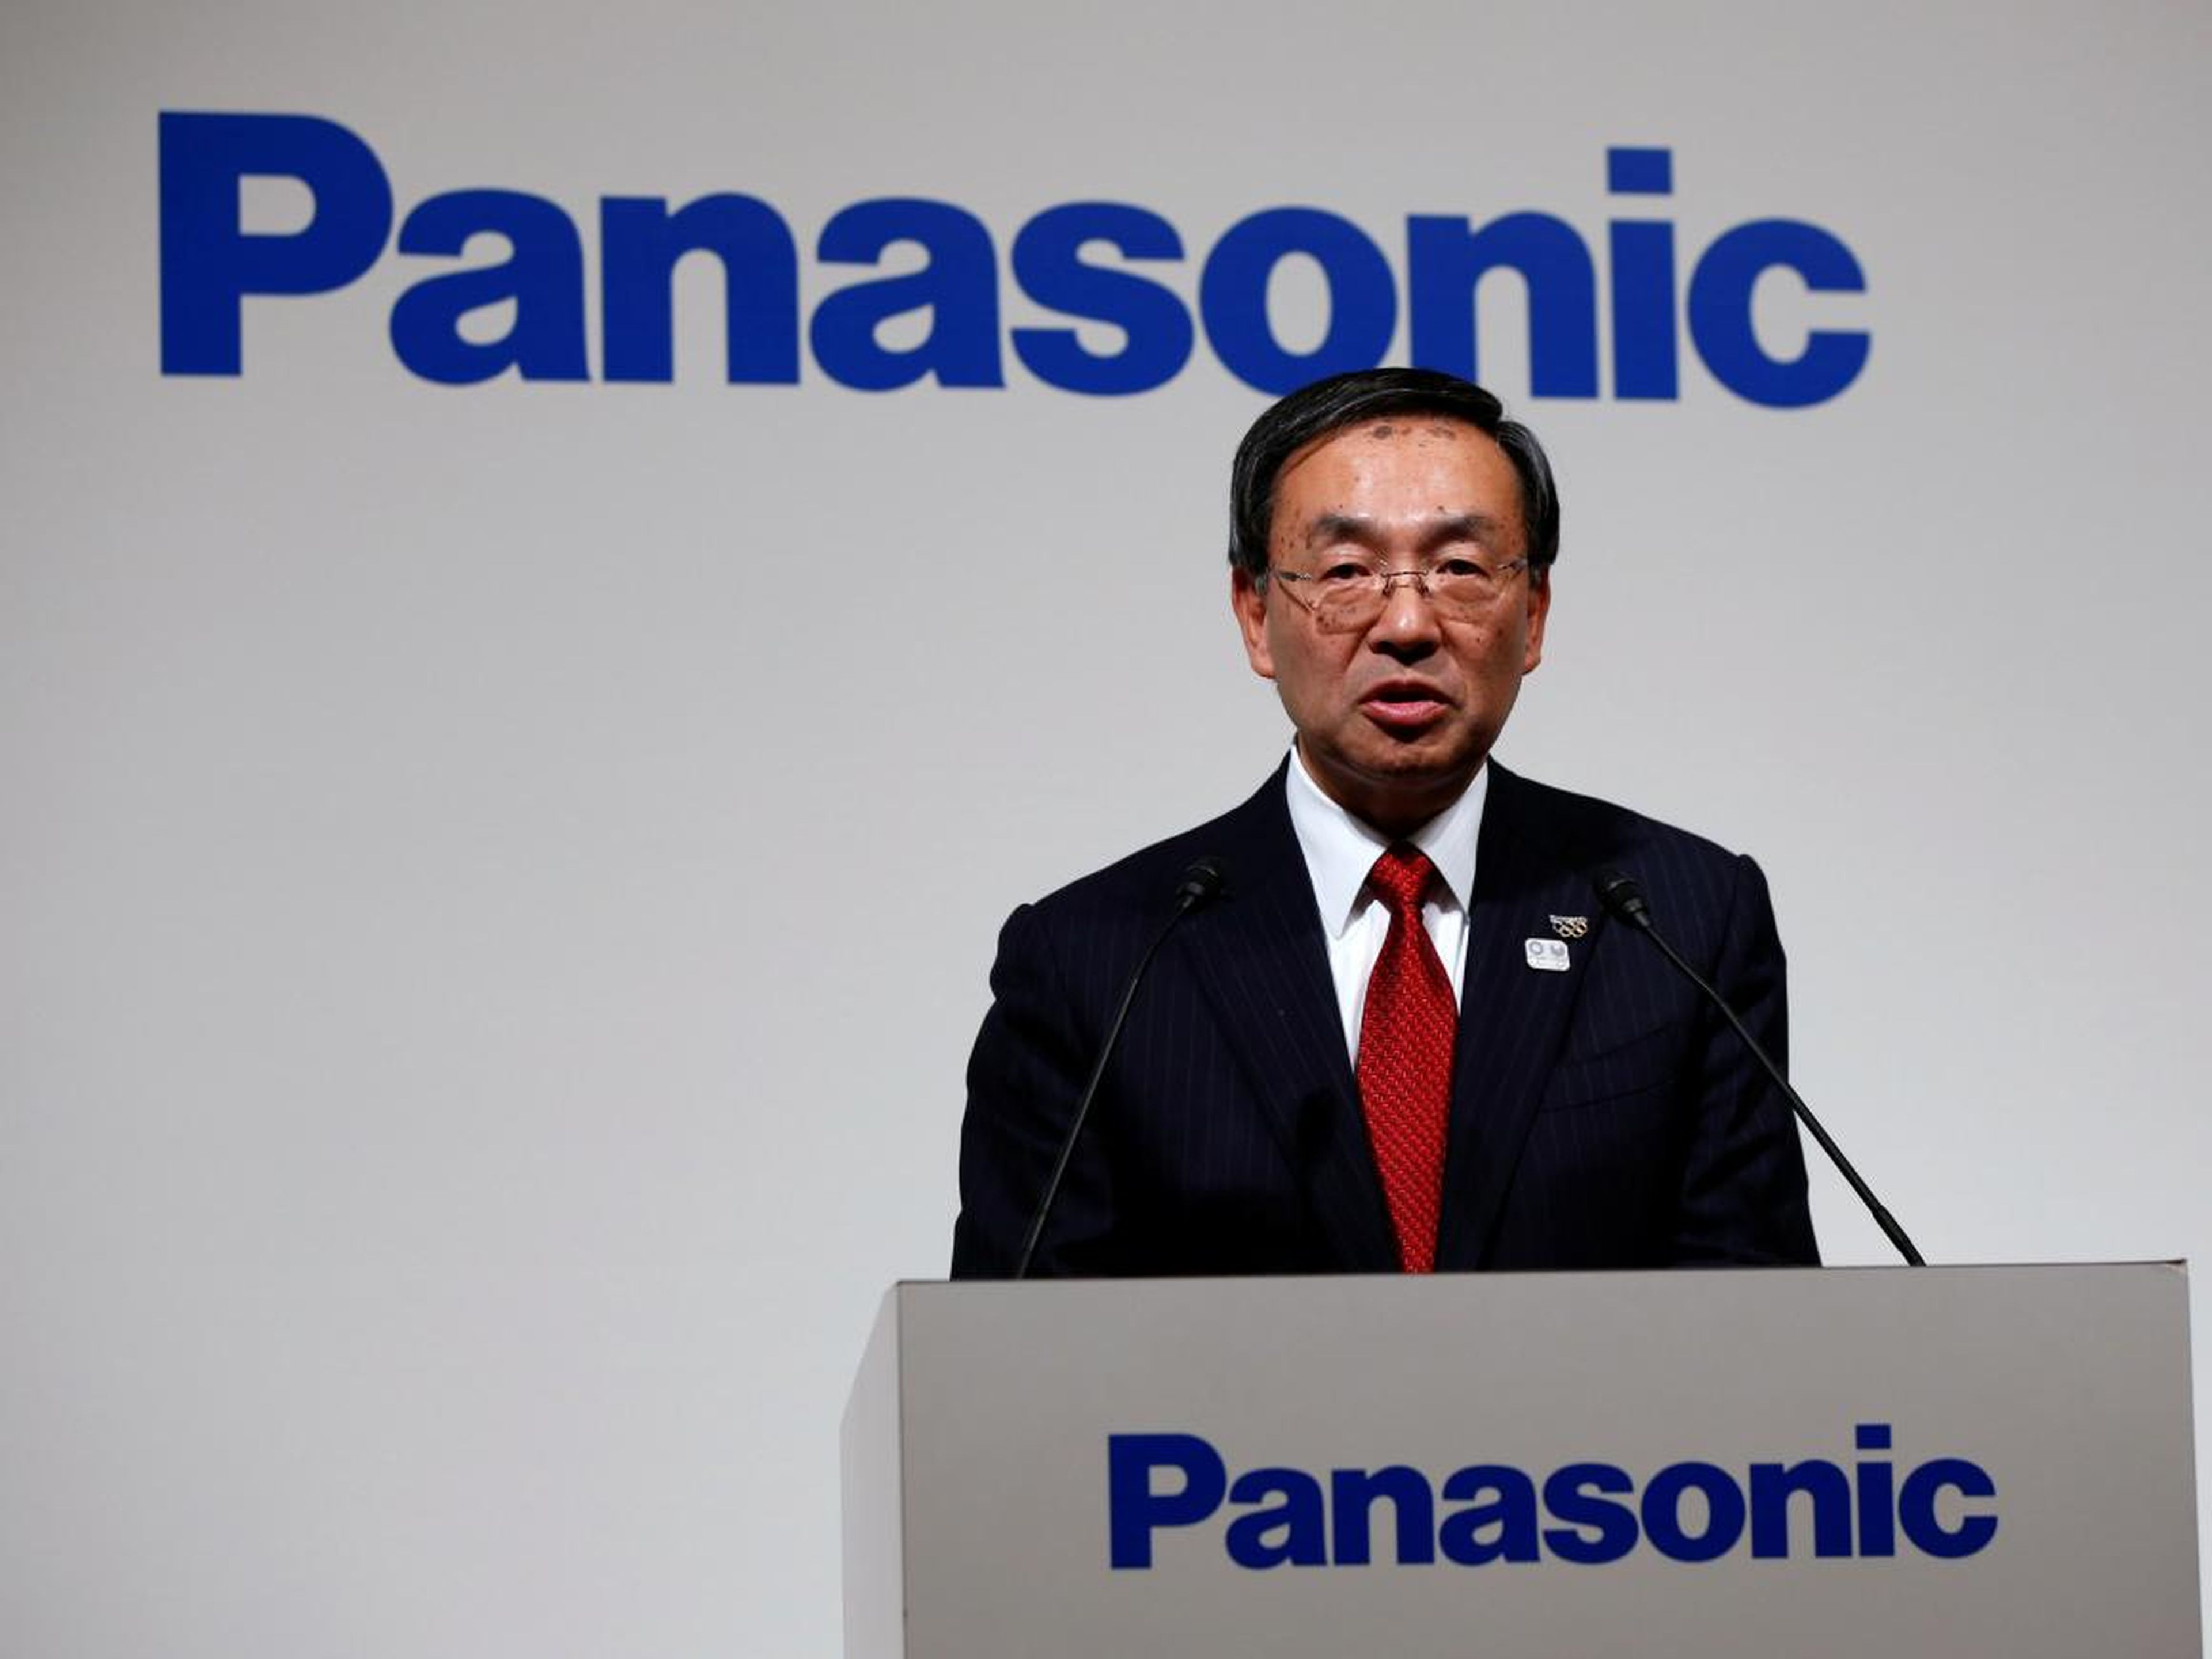 Panasonic's president, Kazuhiro Tsuga.